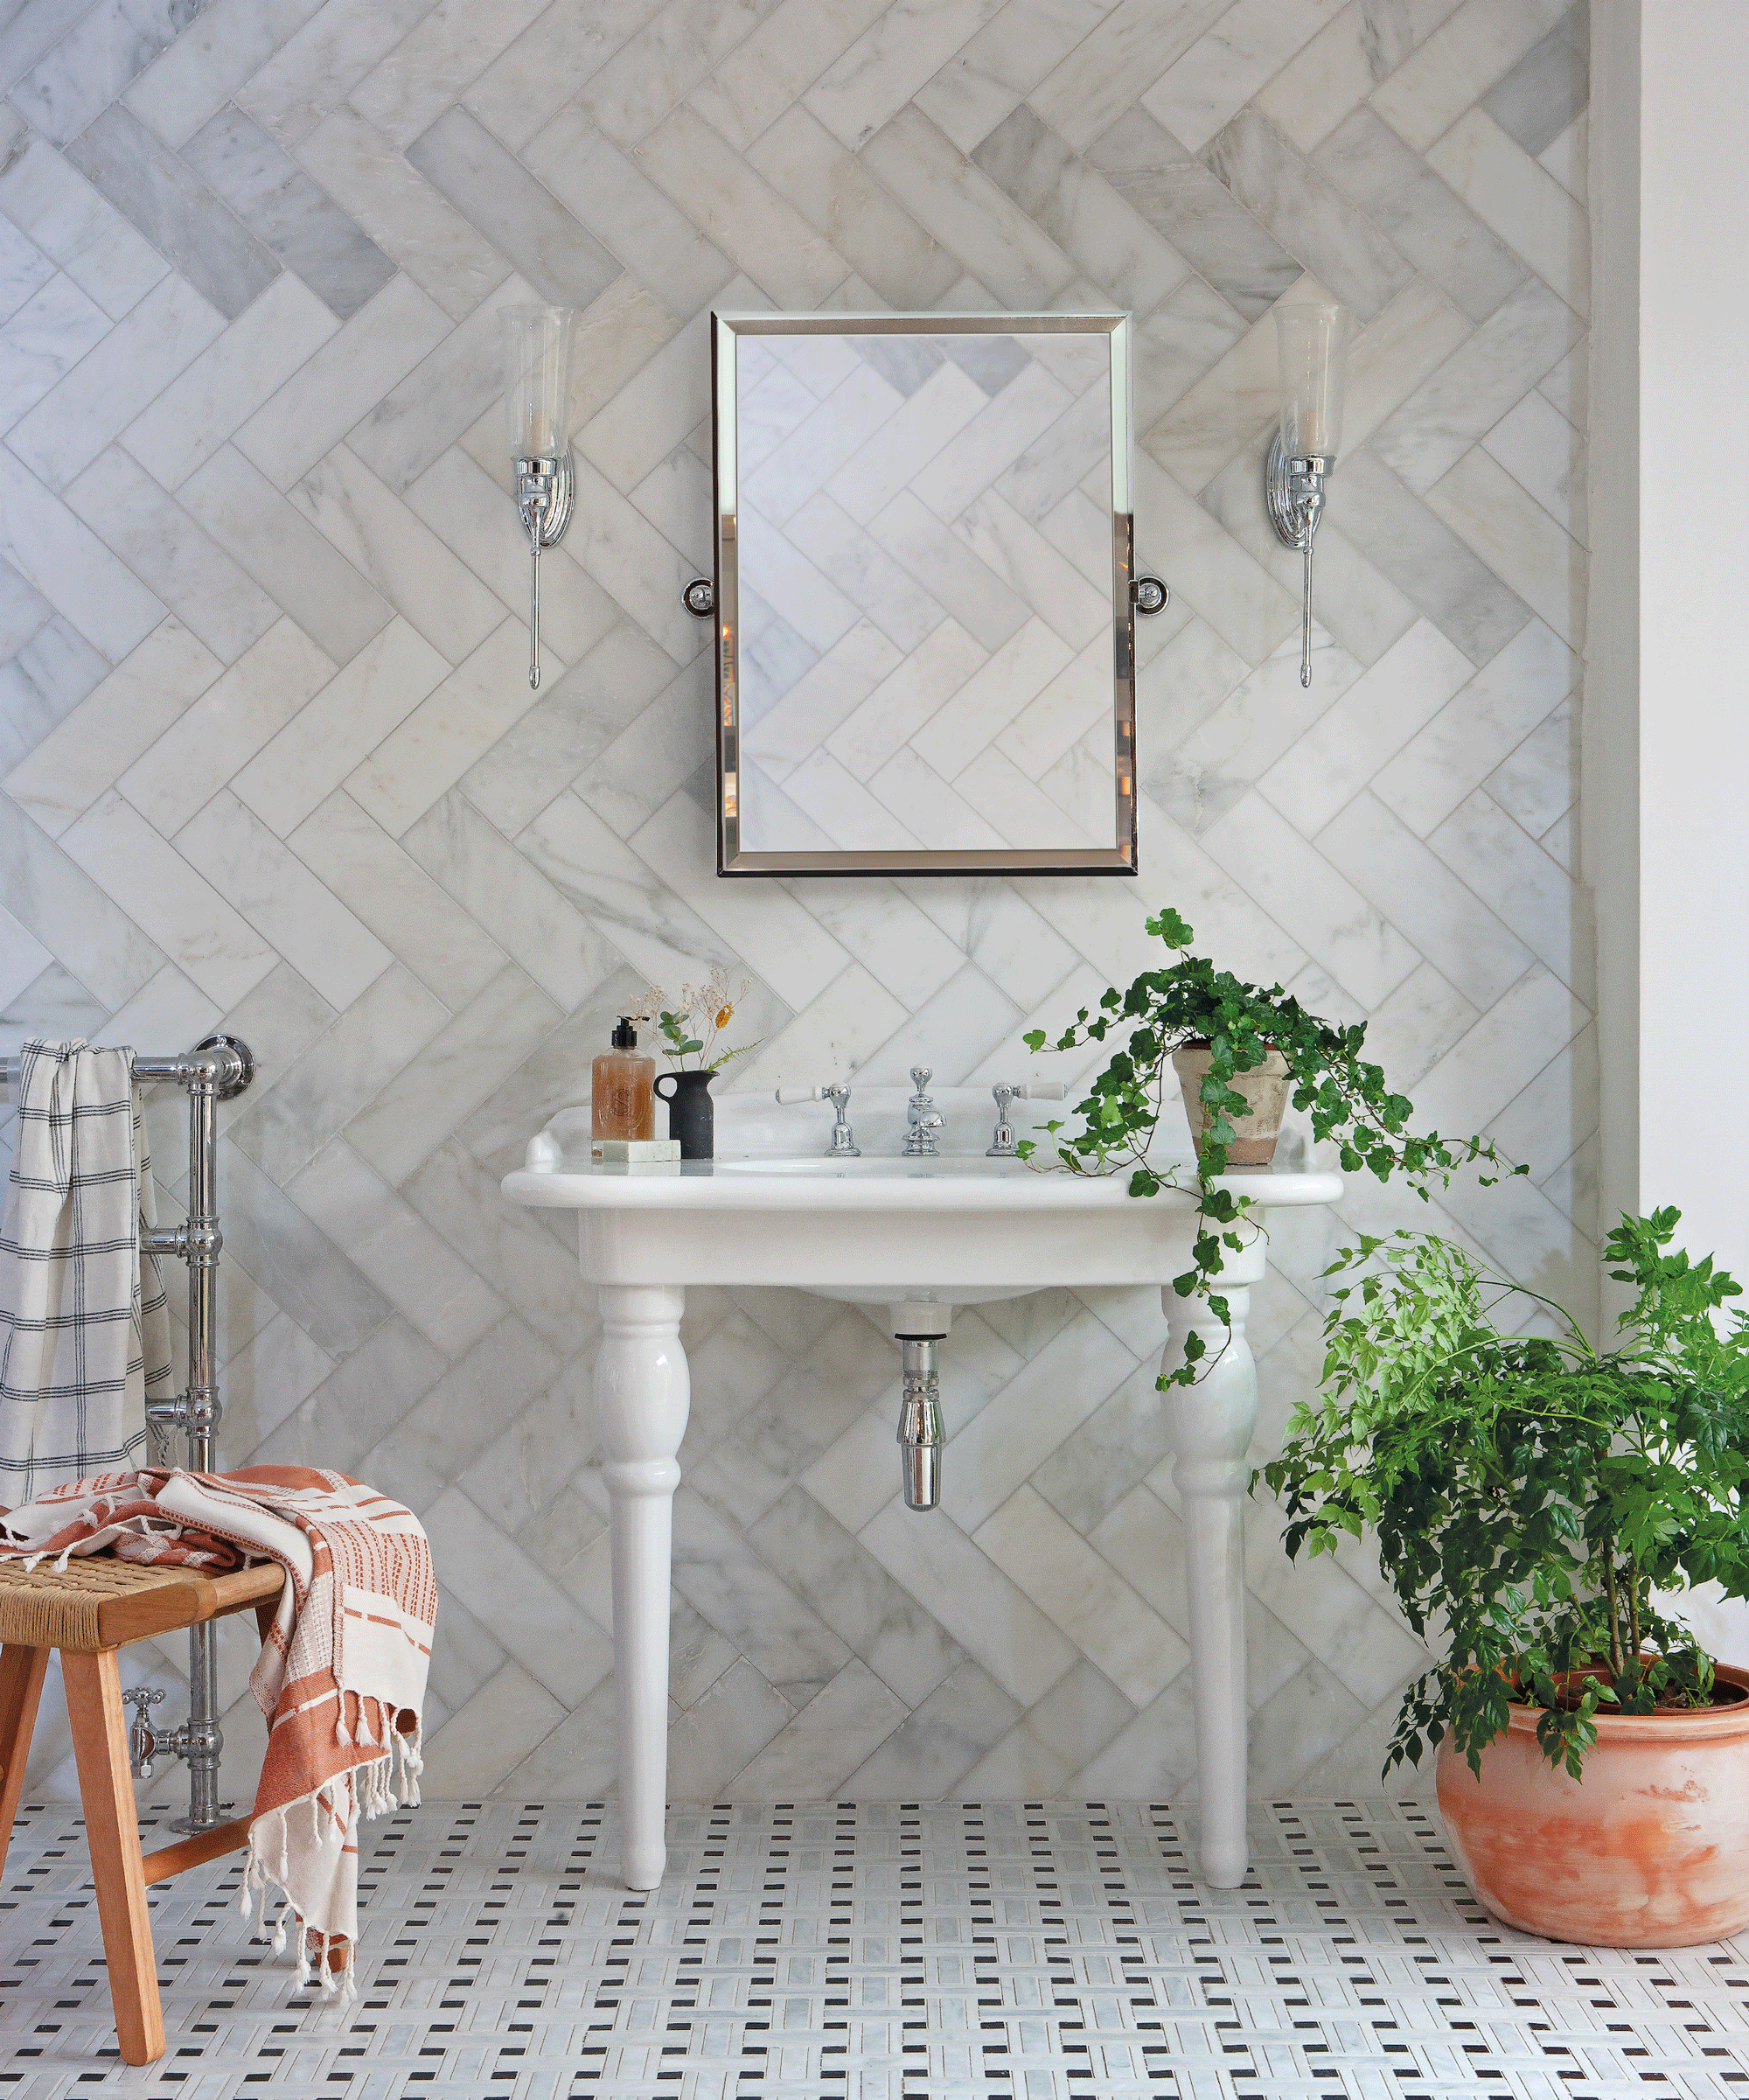 Bathroom with marble flooring in basketweave design